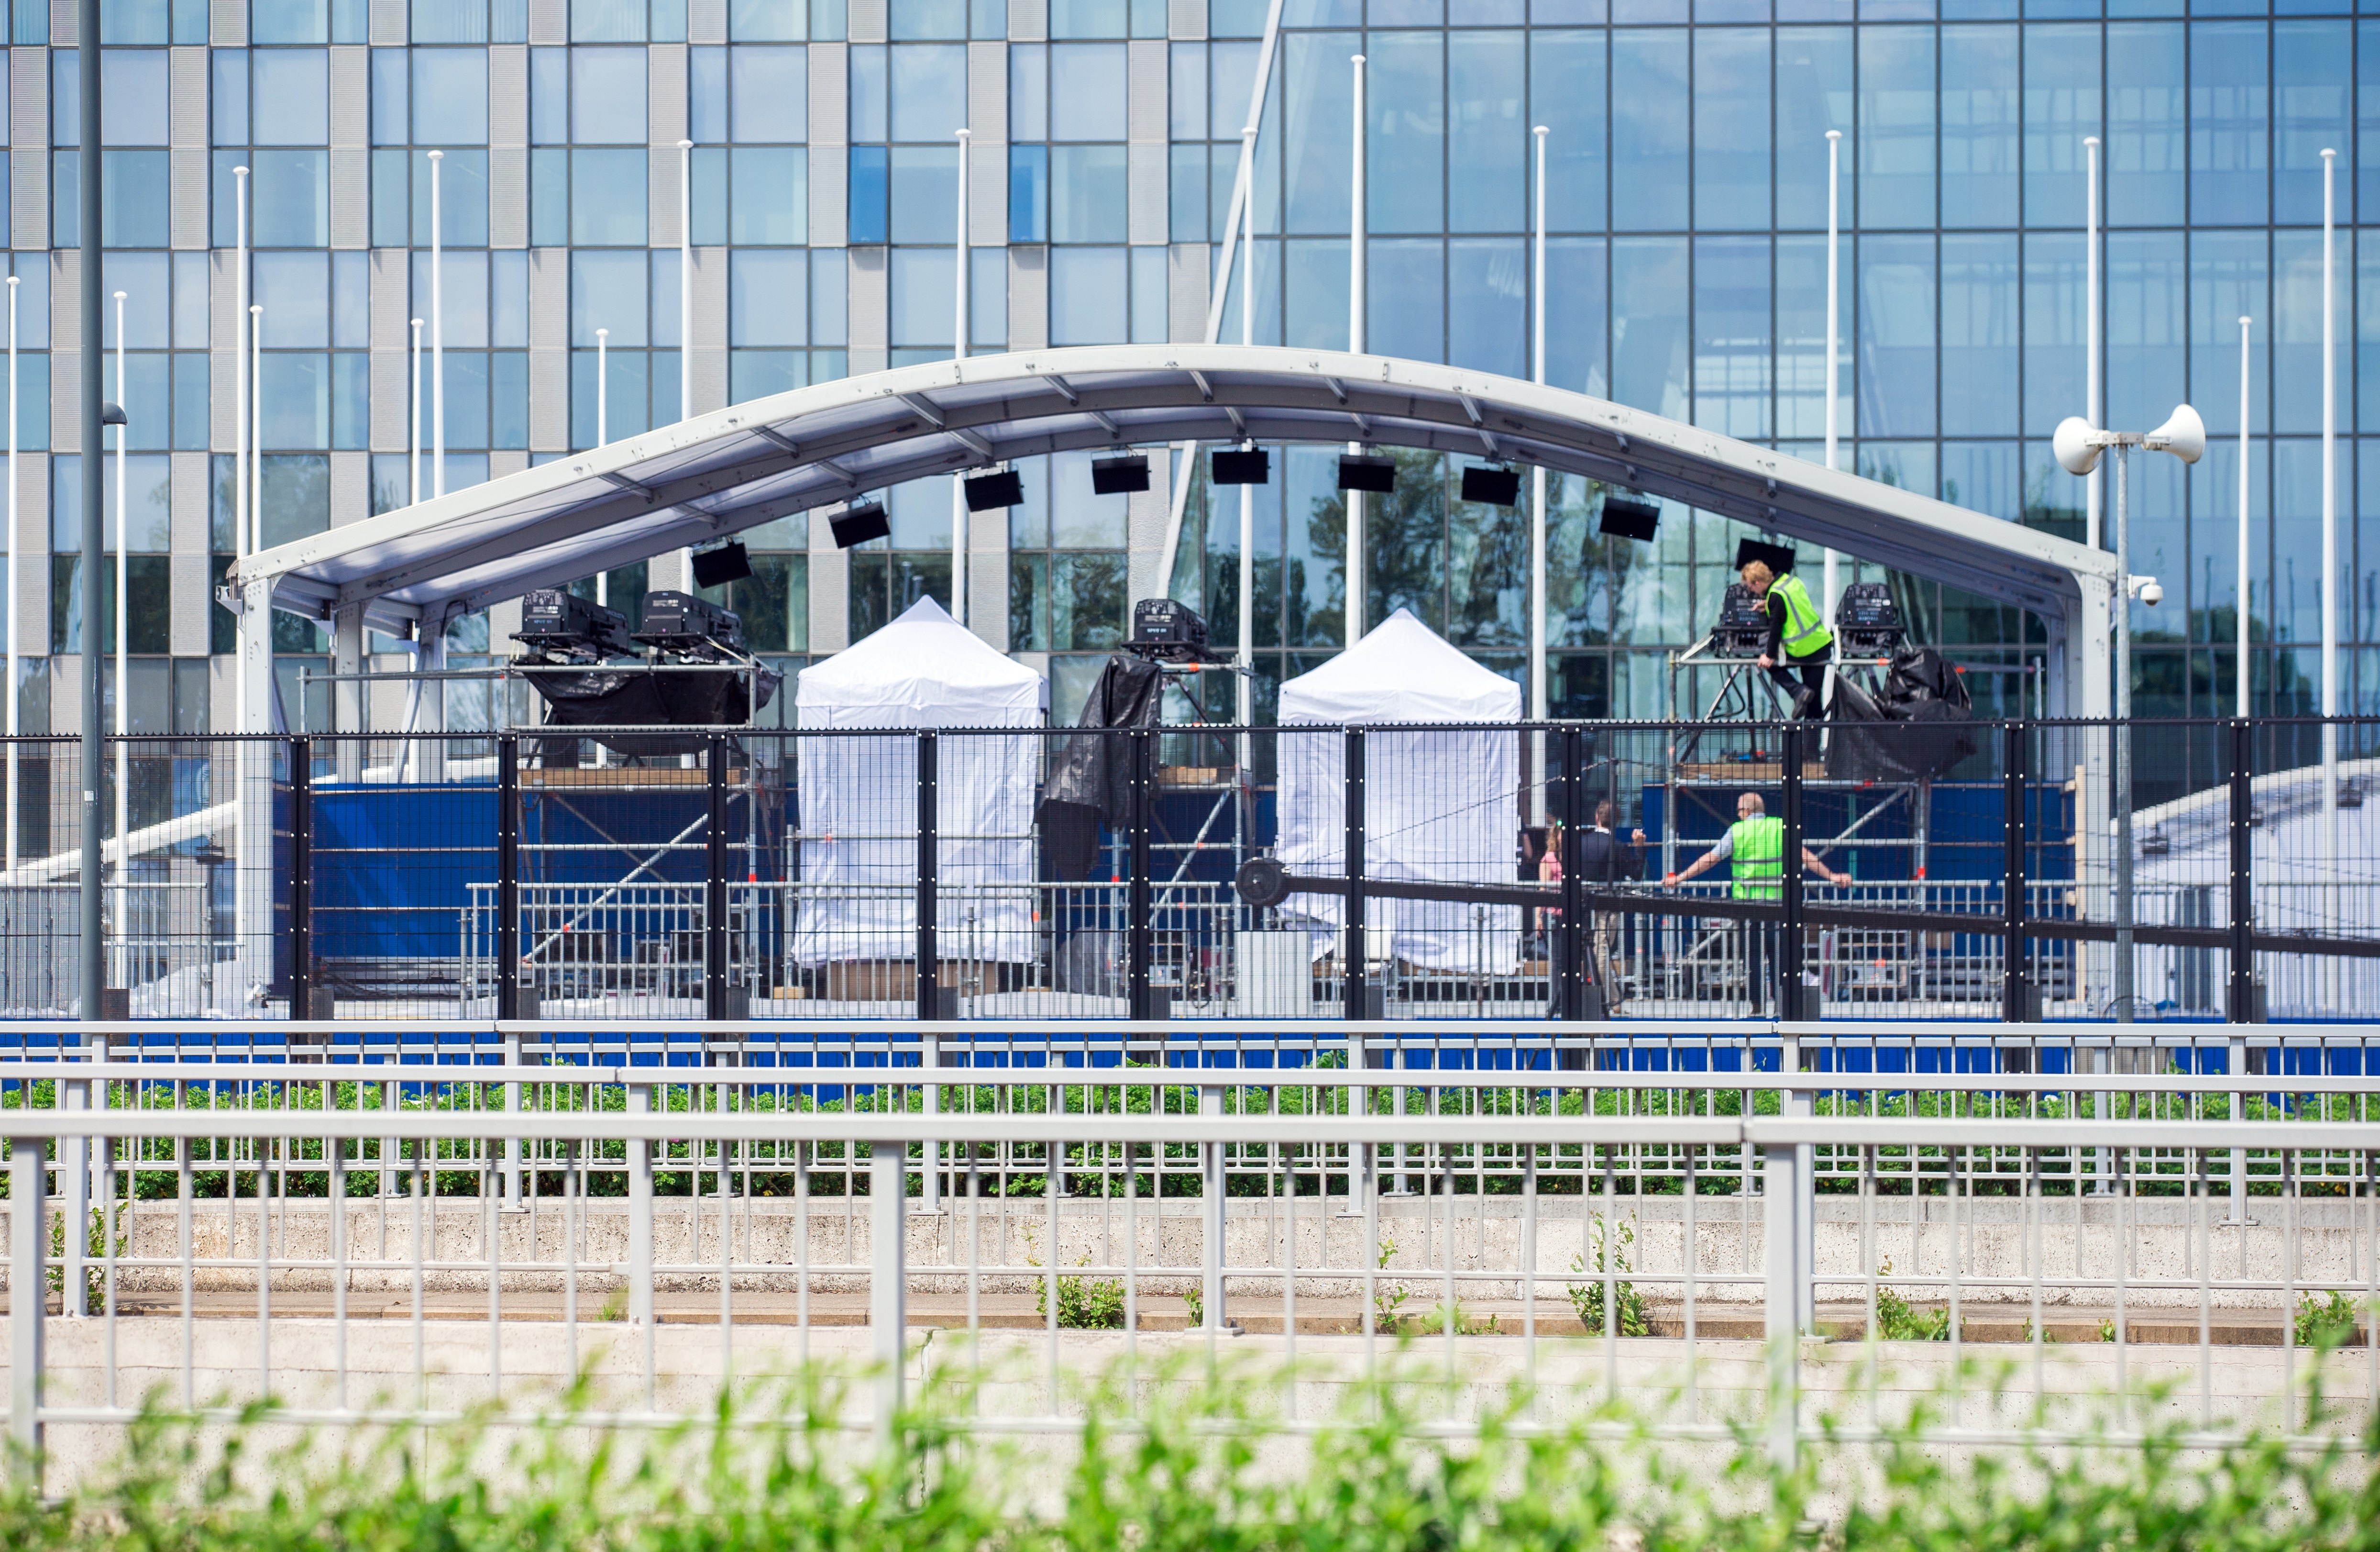 Огромната сграда, която прилича на забити нокти на птица в земята, струва над 1 милиард долара. В новата централа в Брюксел ще работят 4000 постоянни служители в администрацията на НАТО за 28-те членки. Българското знаме също се вее пред супермодерната сграда. Сградата бе построена за 7 години – от 2010 година.